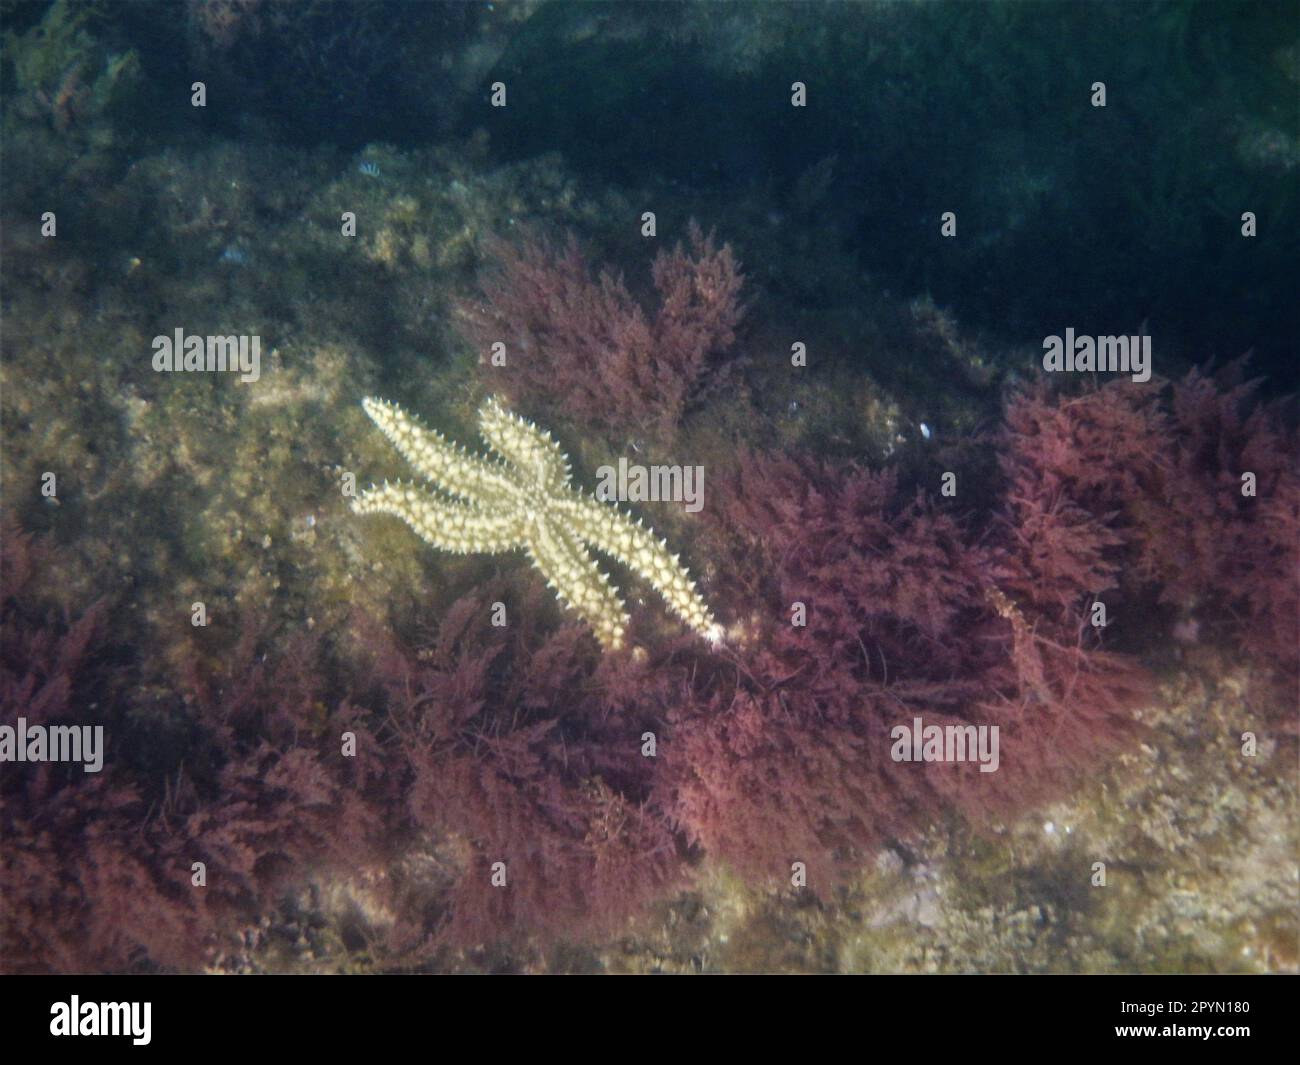 Stelle marine Echinoderm in mare Foto Stock